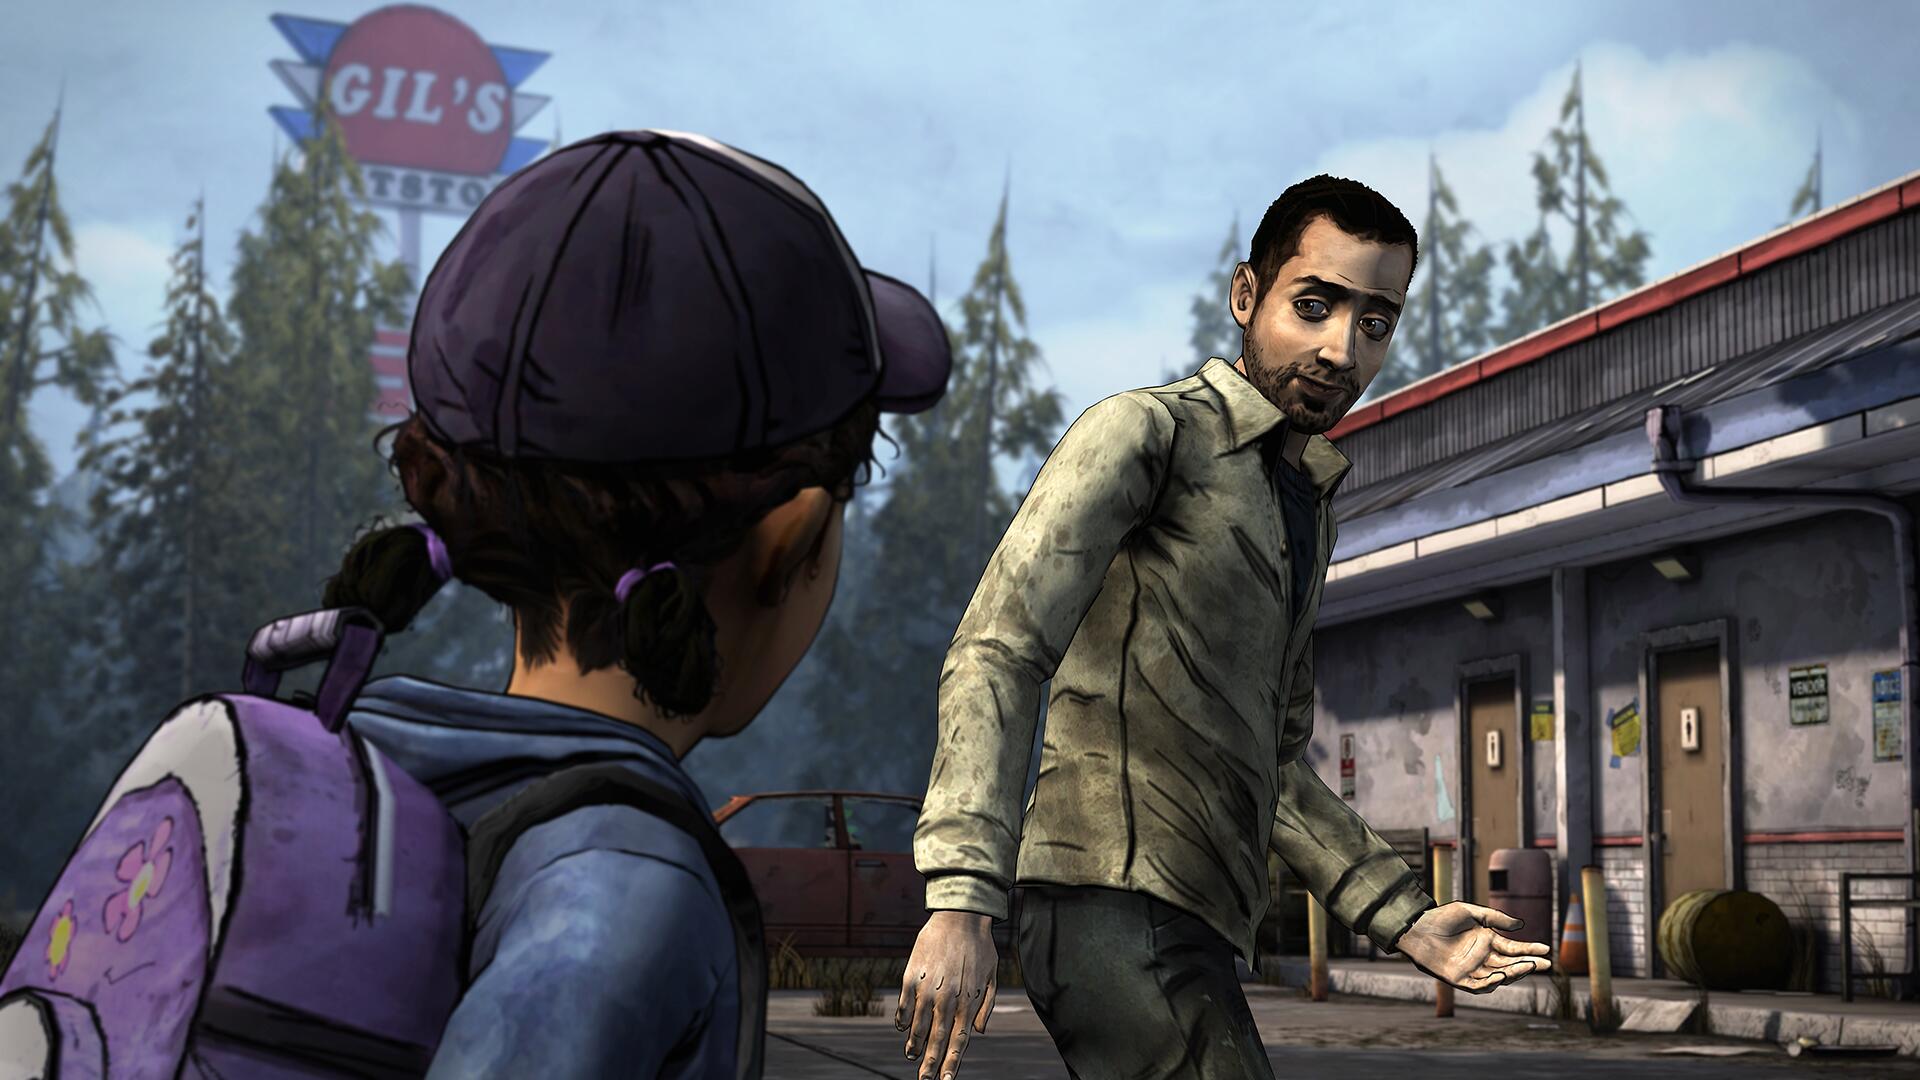 Preços baixos em Ação, Aventura The Walking Dead 2013 Video Games